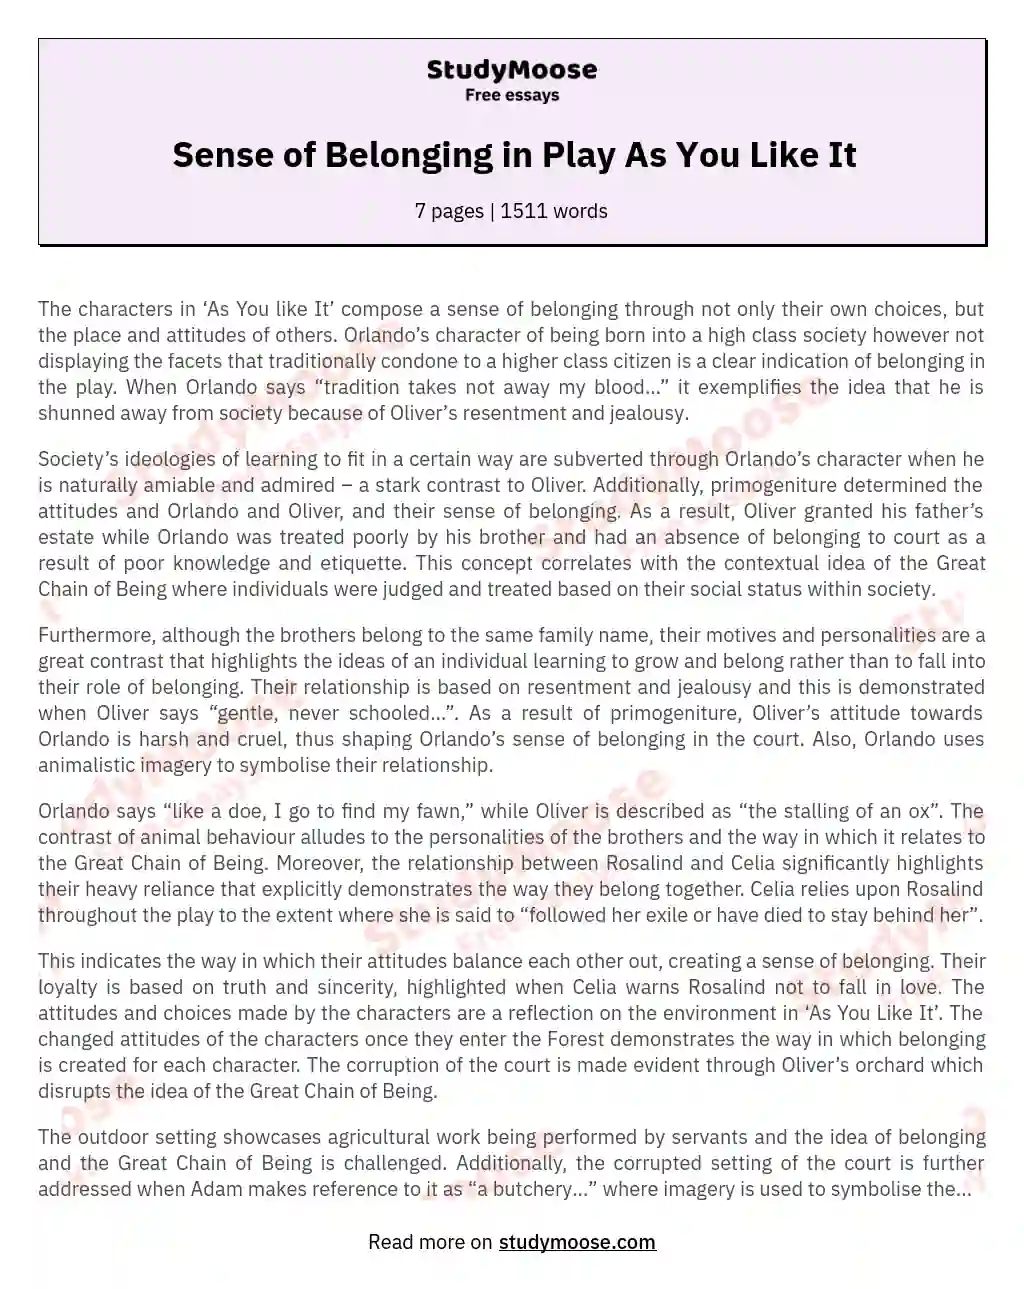 Sense of Belonging in Play As You Like It